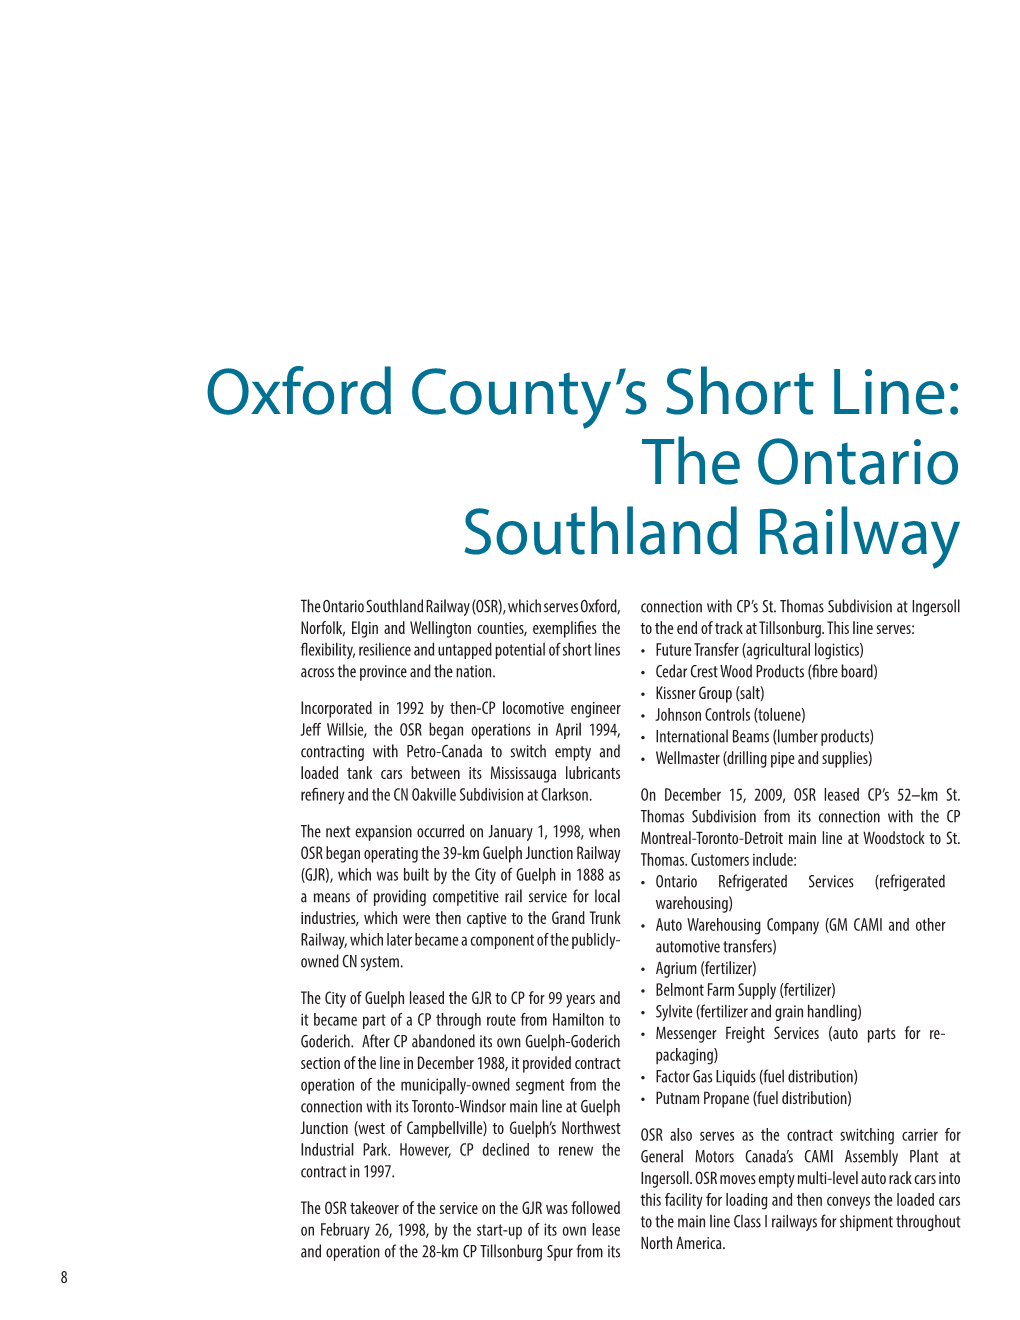 The Ontario Southland Railway